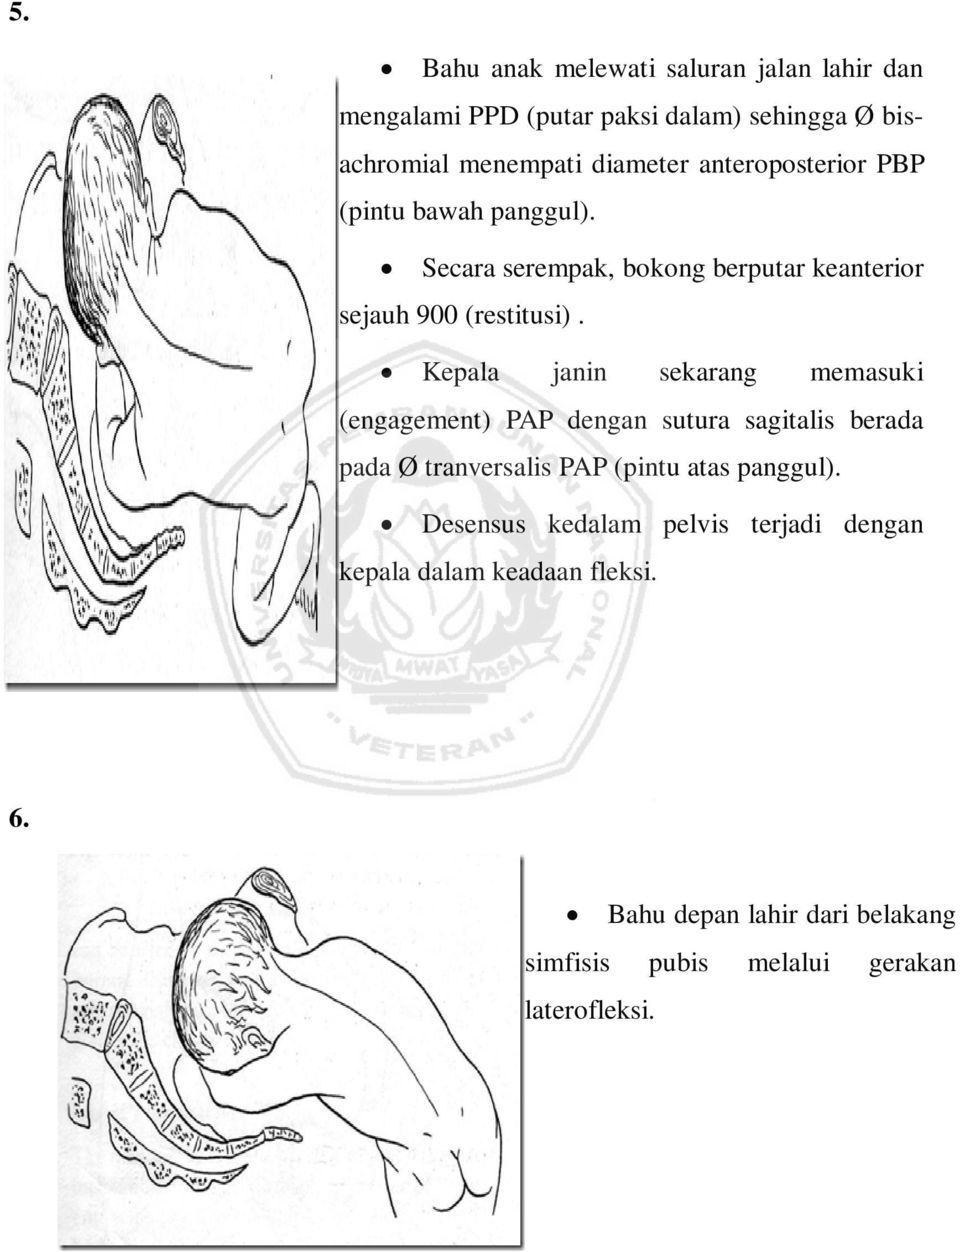 Kepala janin sekarang memasuki (engagement) PAP dengan sutura sagitalis berada pada Ø tranversalis PAP (pintu atas panggul).